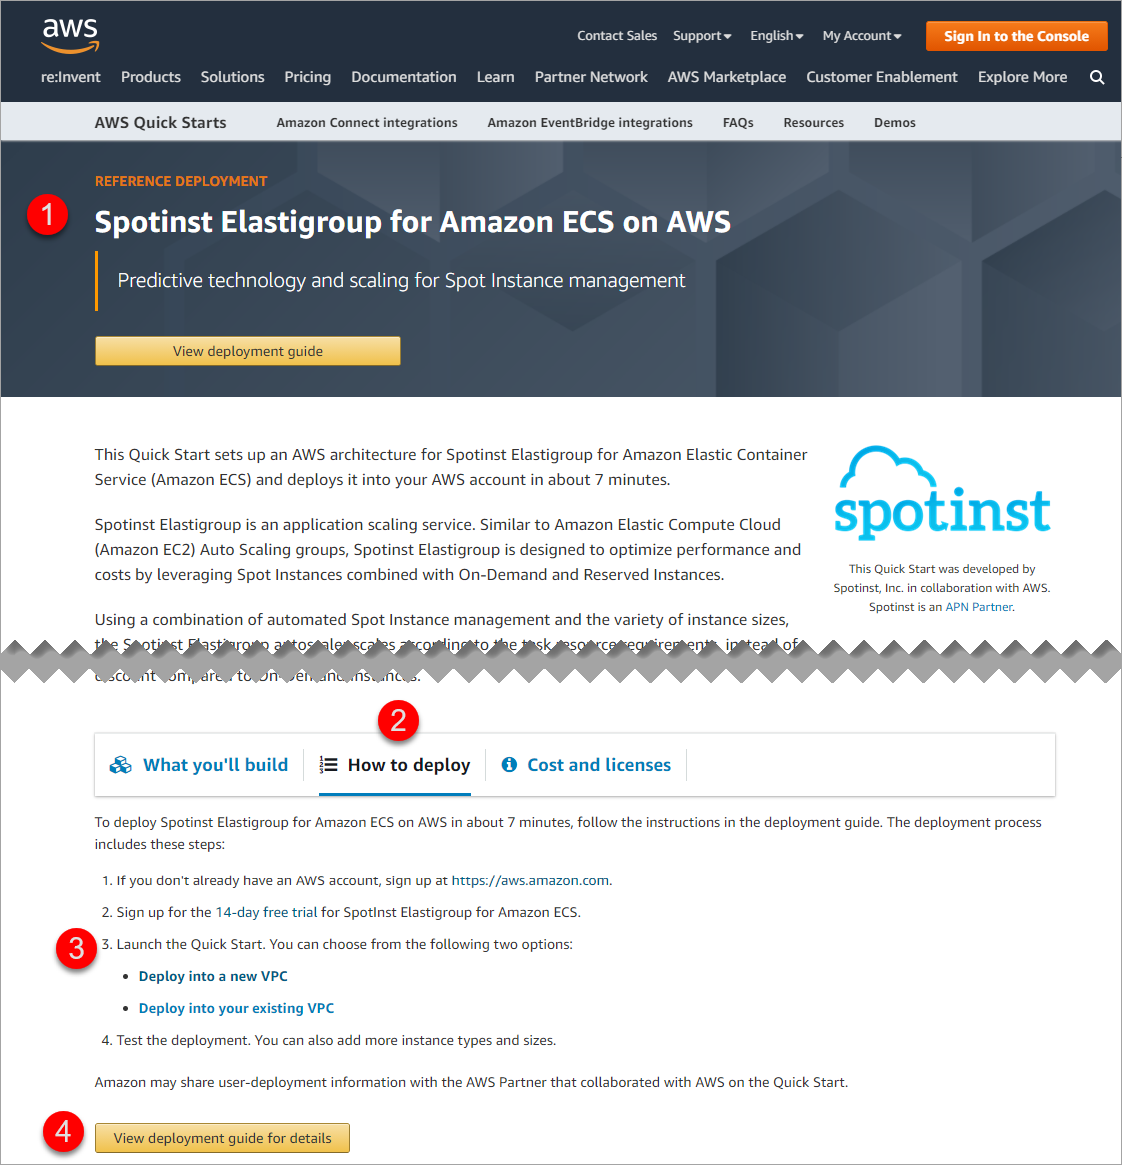 Spotinst Elastigroup for Amazon ECS on AWS